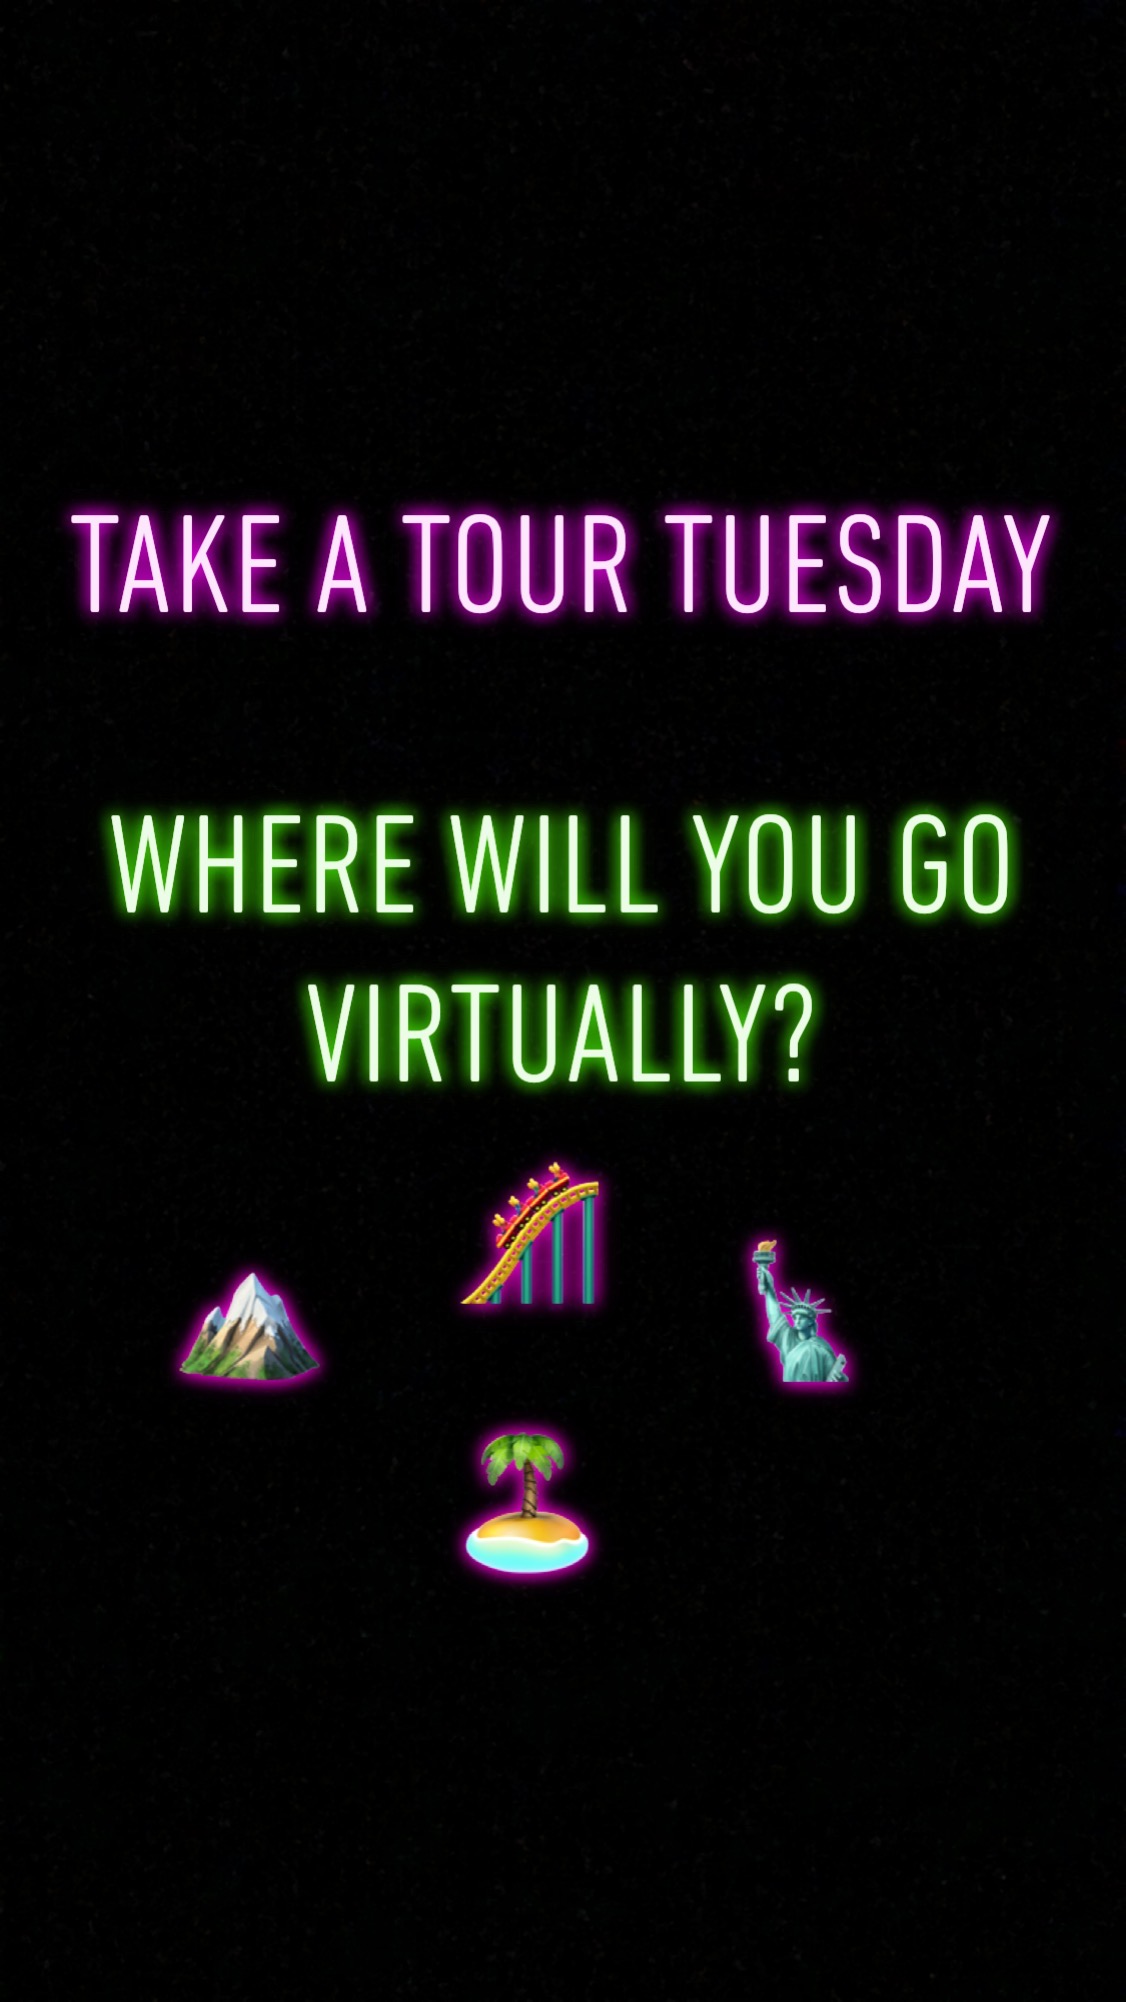 Take a Tour Tuesday